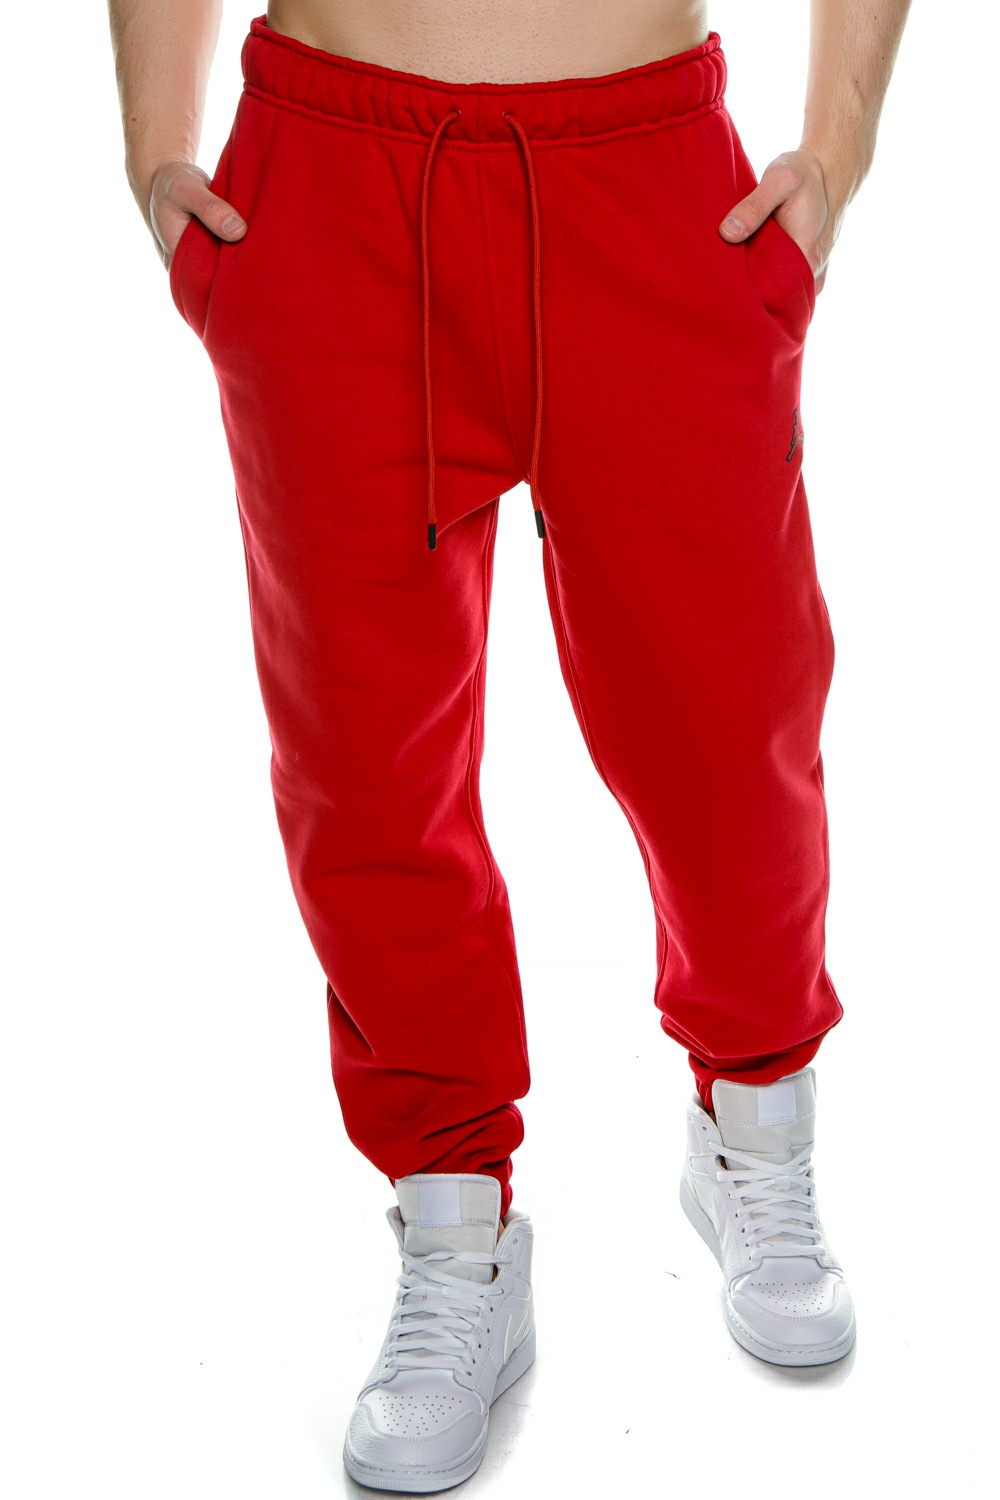 Ανδρικά/Ρούχα/Αθλητικά/Φόρμες NIKE - Ανδρικό παντελόνι φόρμας NIKE JORDAN ESSENTIALS κόκκινο